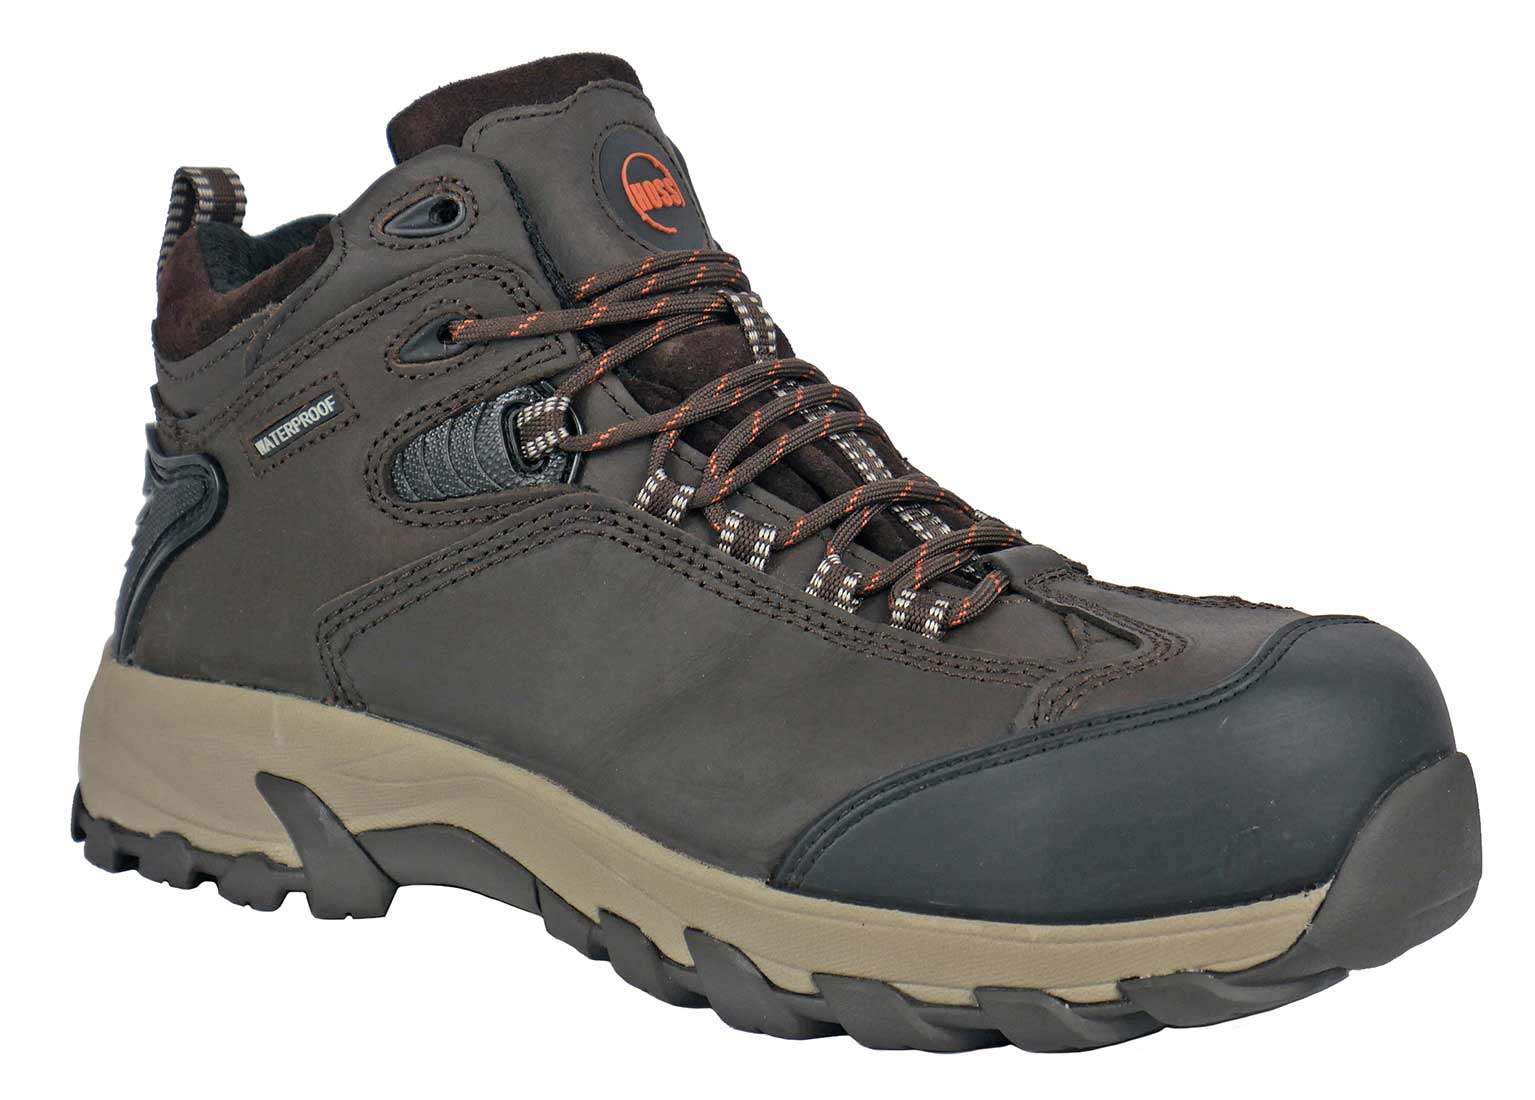 Hoss Boots 50406 Frontier Men's 3 Waterproof Composite Toe Work Boot - Extra Depth